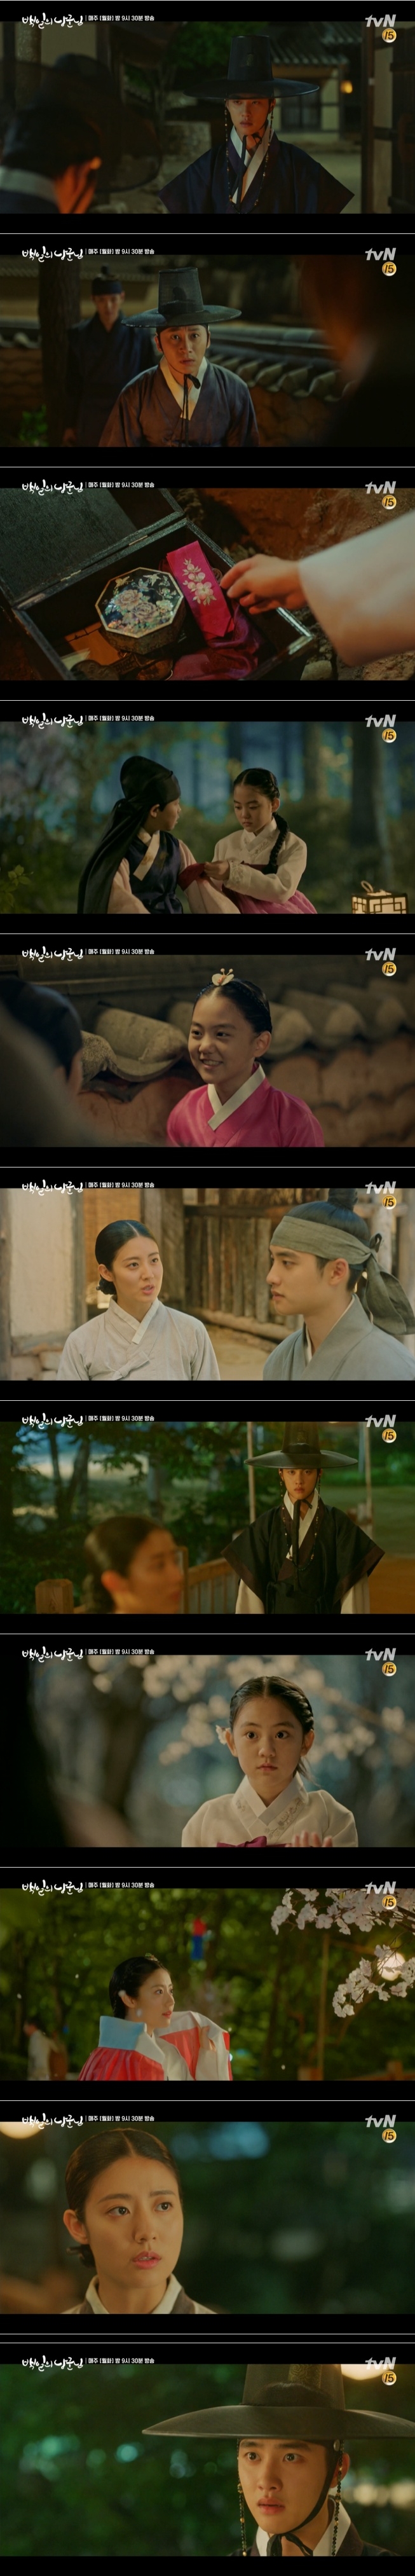 22일 방송된 tvN 월화드라마 '백일의 낭군님' 13회에서는 왕세자 이율(원득, 도경수)이 홍심(남지현)이 바로 첫사랑 윤이서(아역 허정은)임을 기억하는 충격 엔딩이 그려졌다. 사진=tvN 방송 캡처